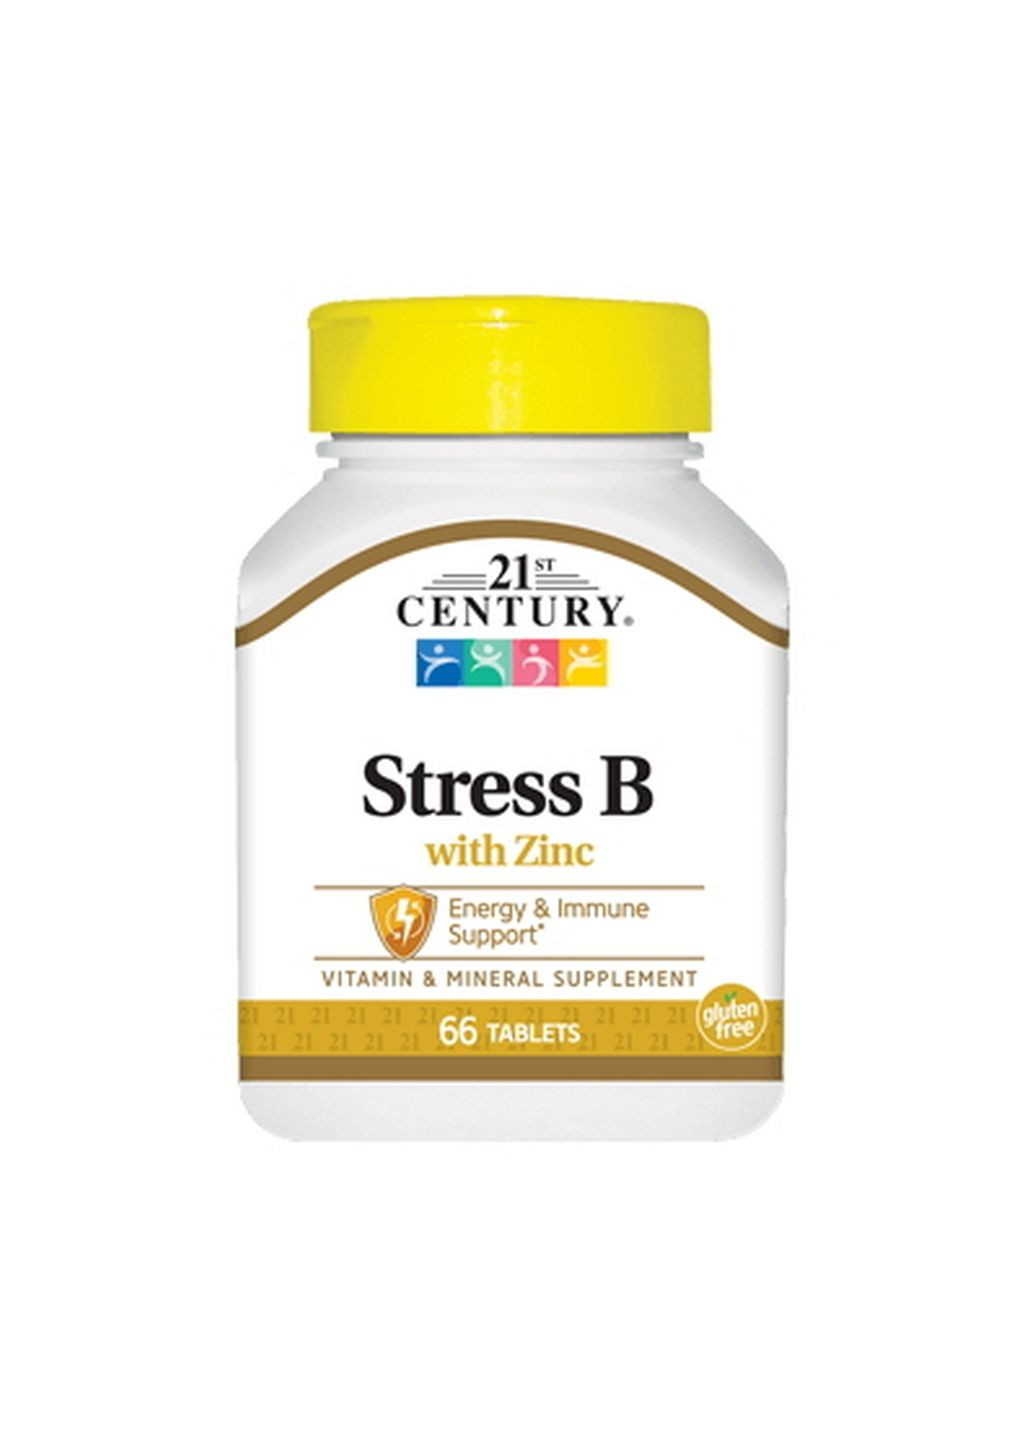 Витамины и минералы Stress B with Zinc, 66 таблеток 21st Century (293340596)